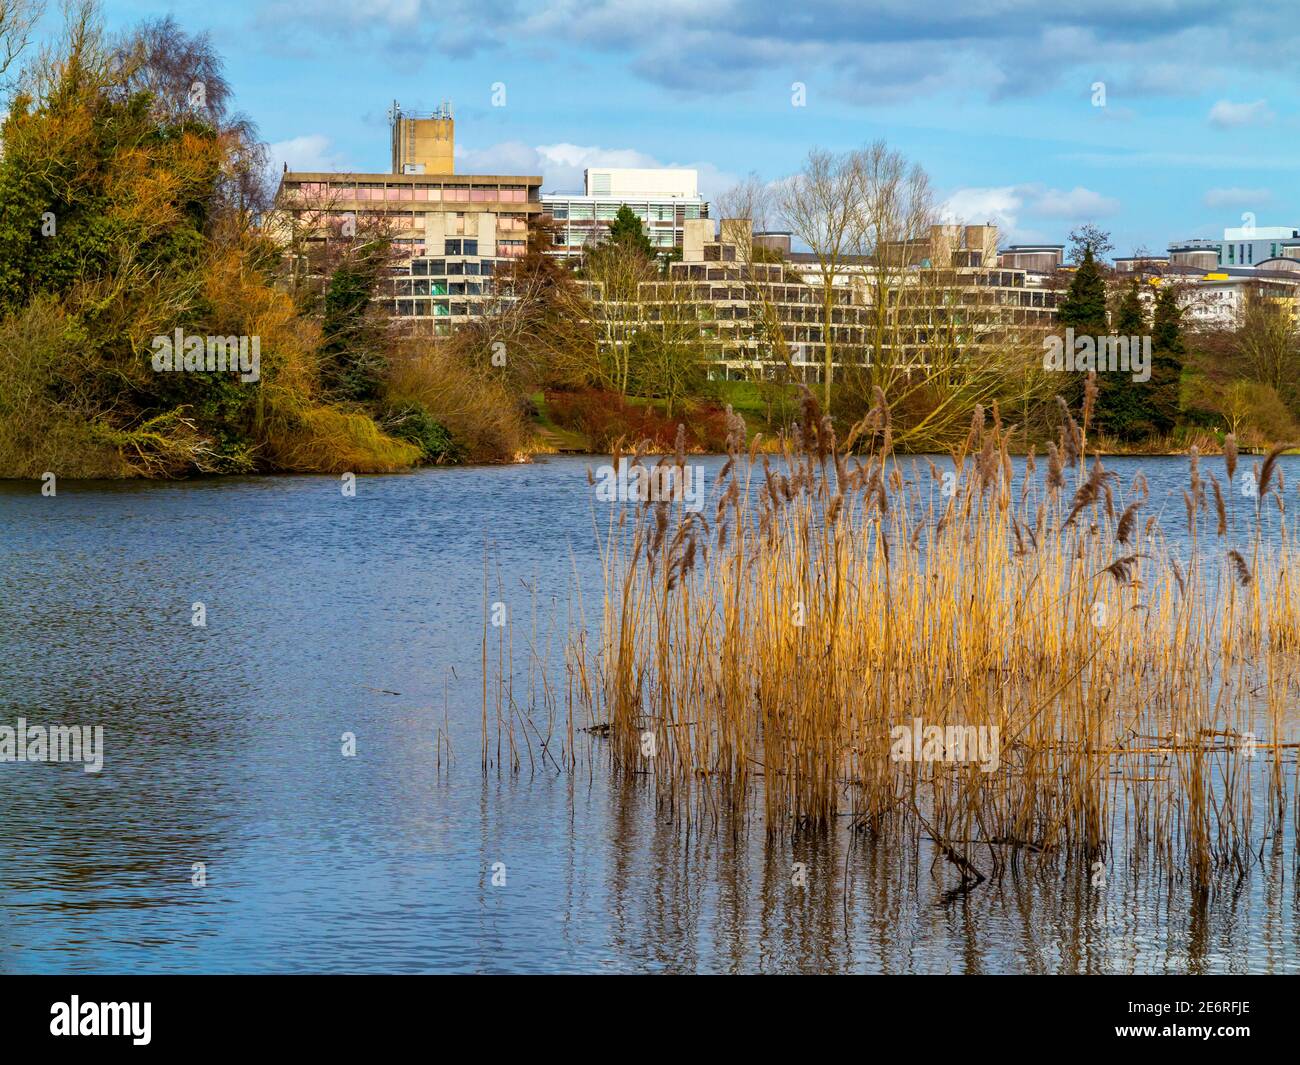 Le campus de l'Université d'East Anglia à Norwich Angleterre Royaume-Uni conçu par Denys Lasdun et construit de 1962 à 1968 avec lac et roseaux en premier plan. Banque D'Images